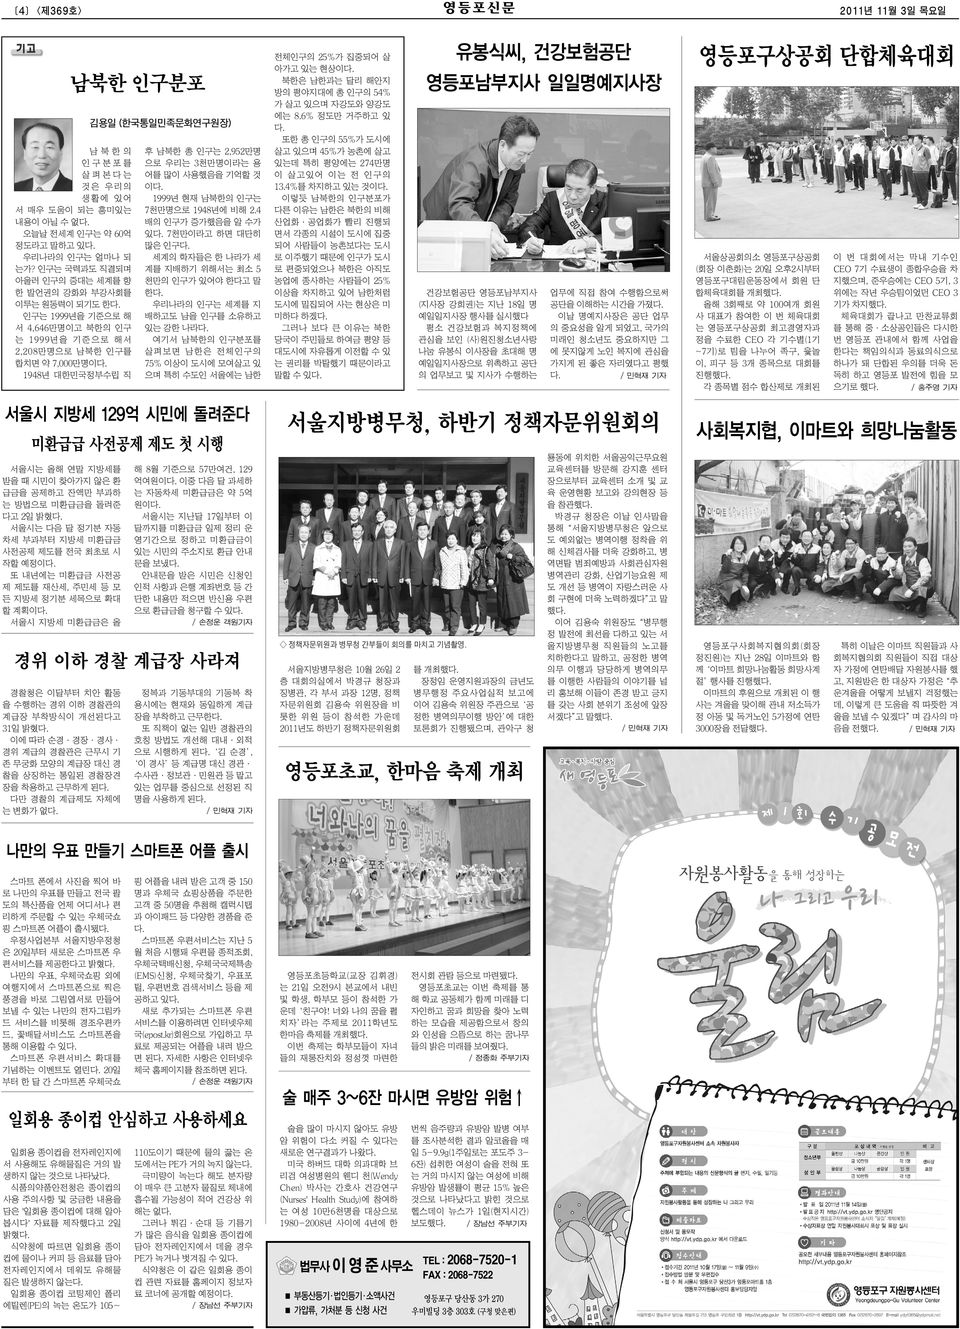 3천만명이라는 용 어를 많이 사용했음을 기억할 것 이 1999년 현재 남북한의 인구는 7천만명으로 1948년에 비해 2.